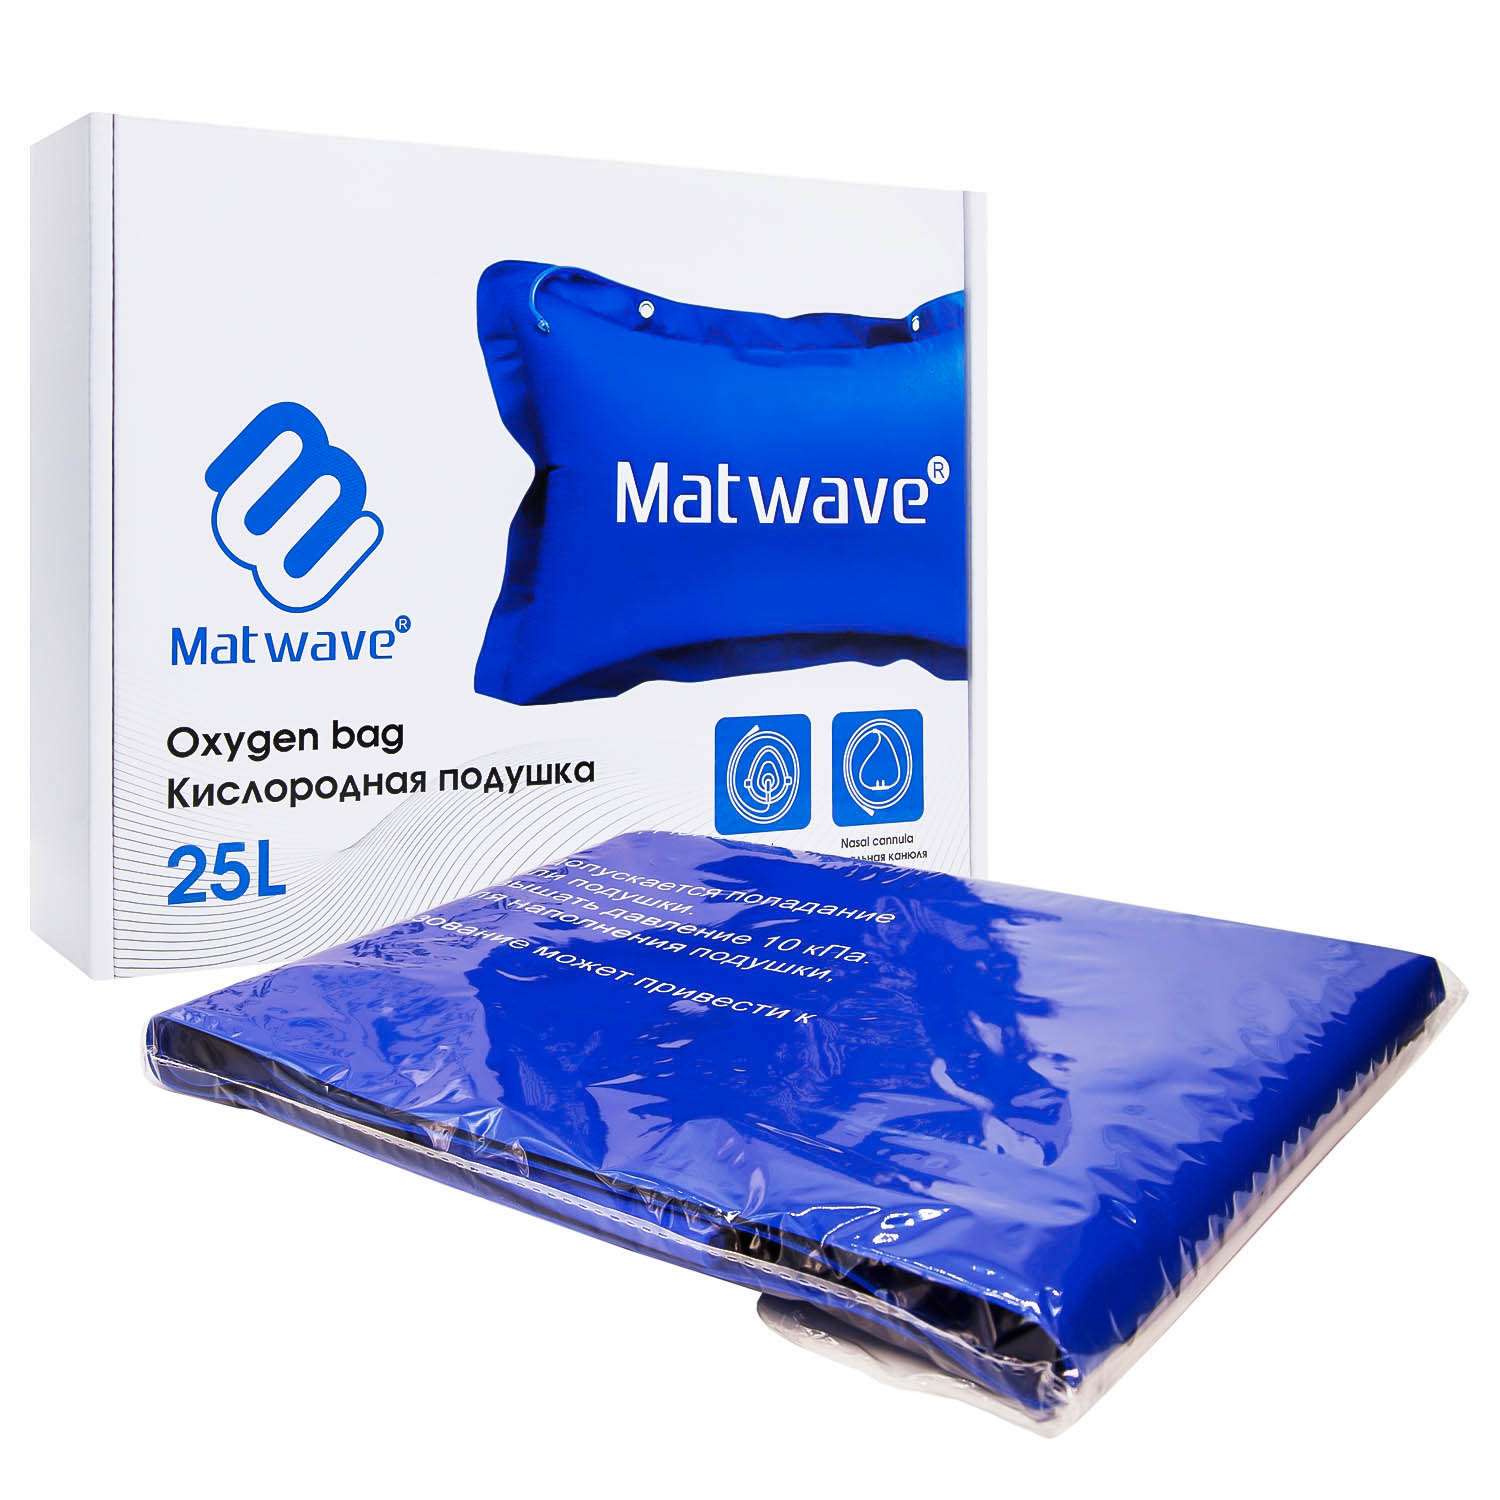 Кислородная подушка Matwave 25L + 2 маски + назальная канюля - фото 5